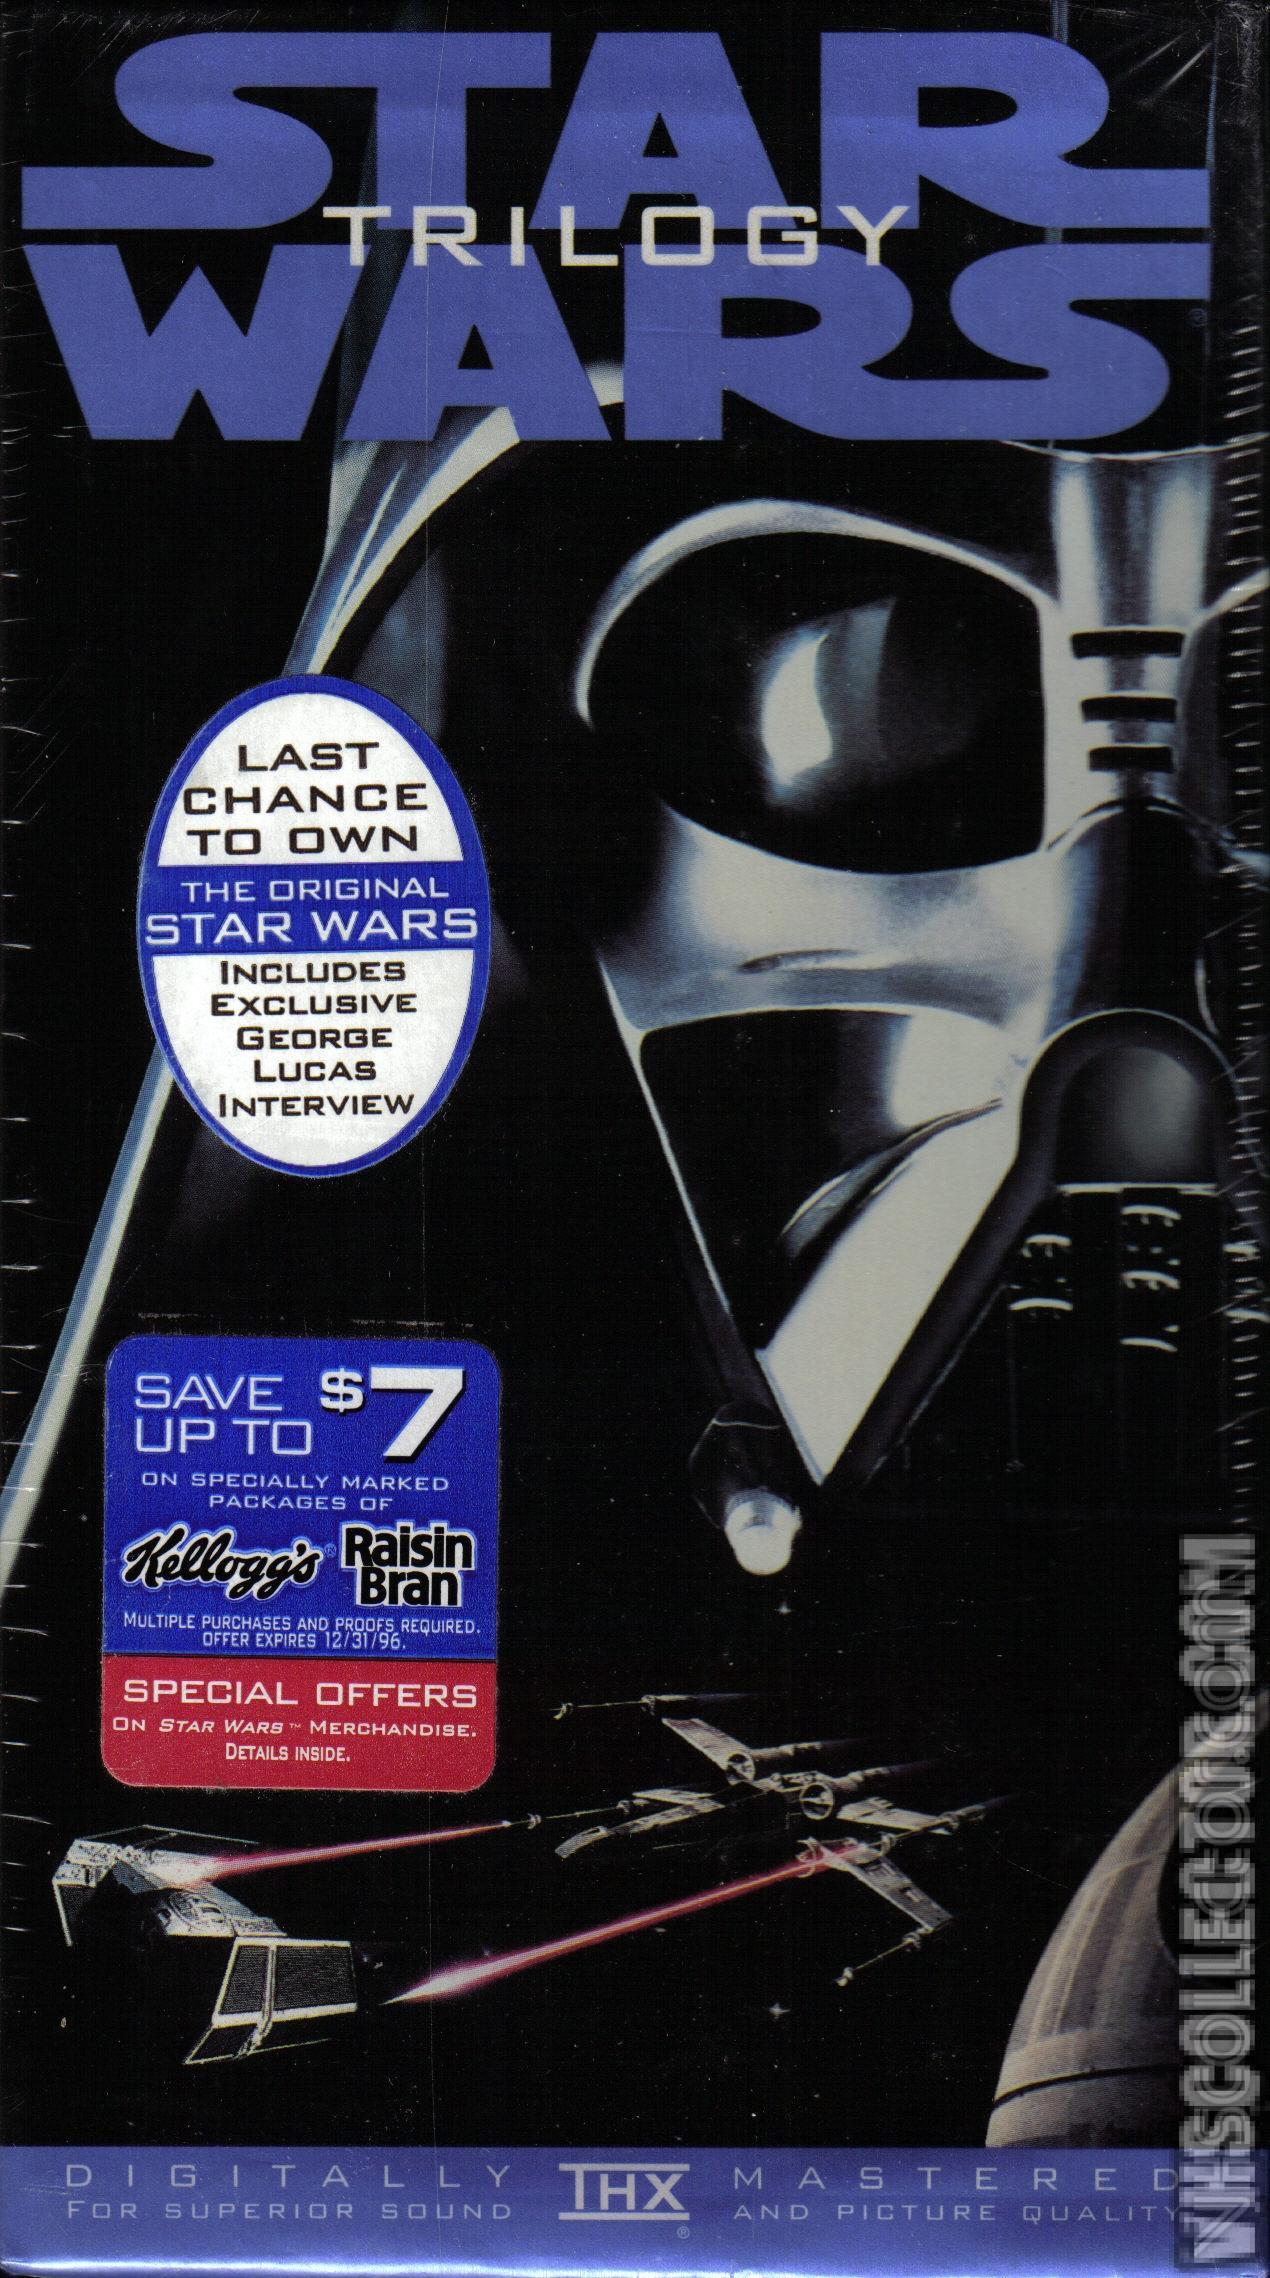 Star Wars Trilogy [Box Set] | VHSCollector.com